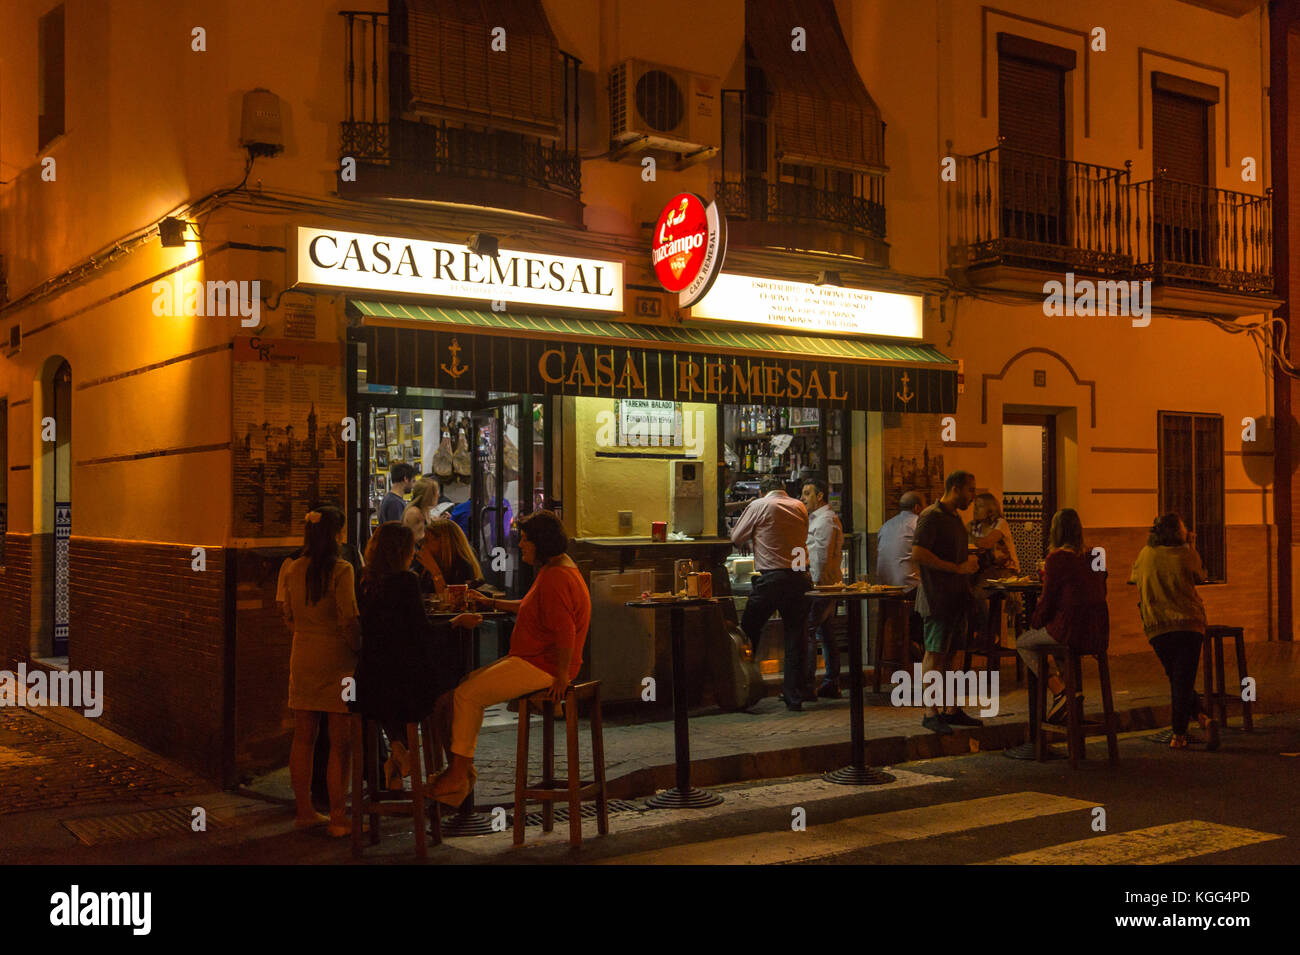 Casa Remesal bar à tapas, Calle Pureza, Triana, Séville, Andalousie, Espagne Banque D'Images